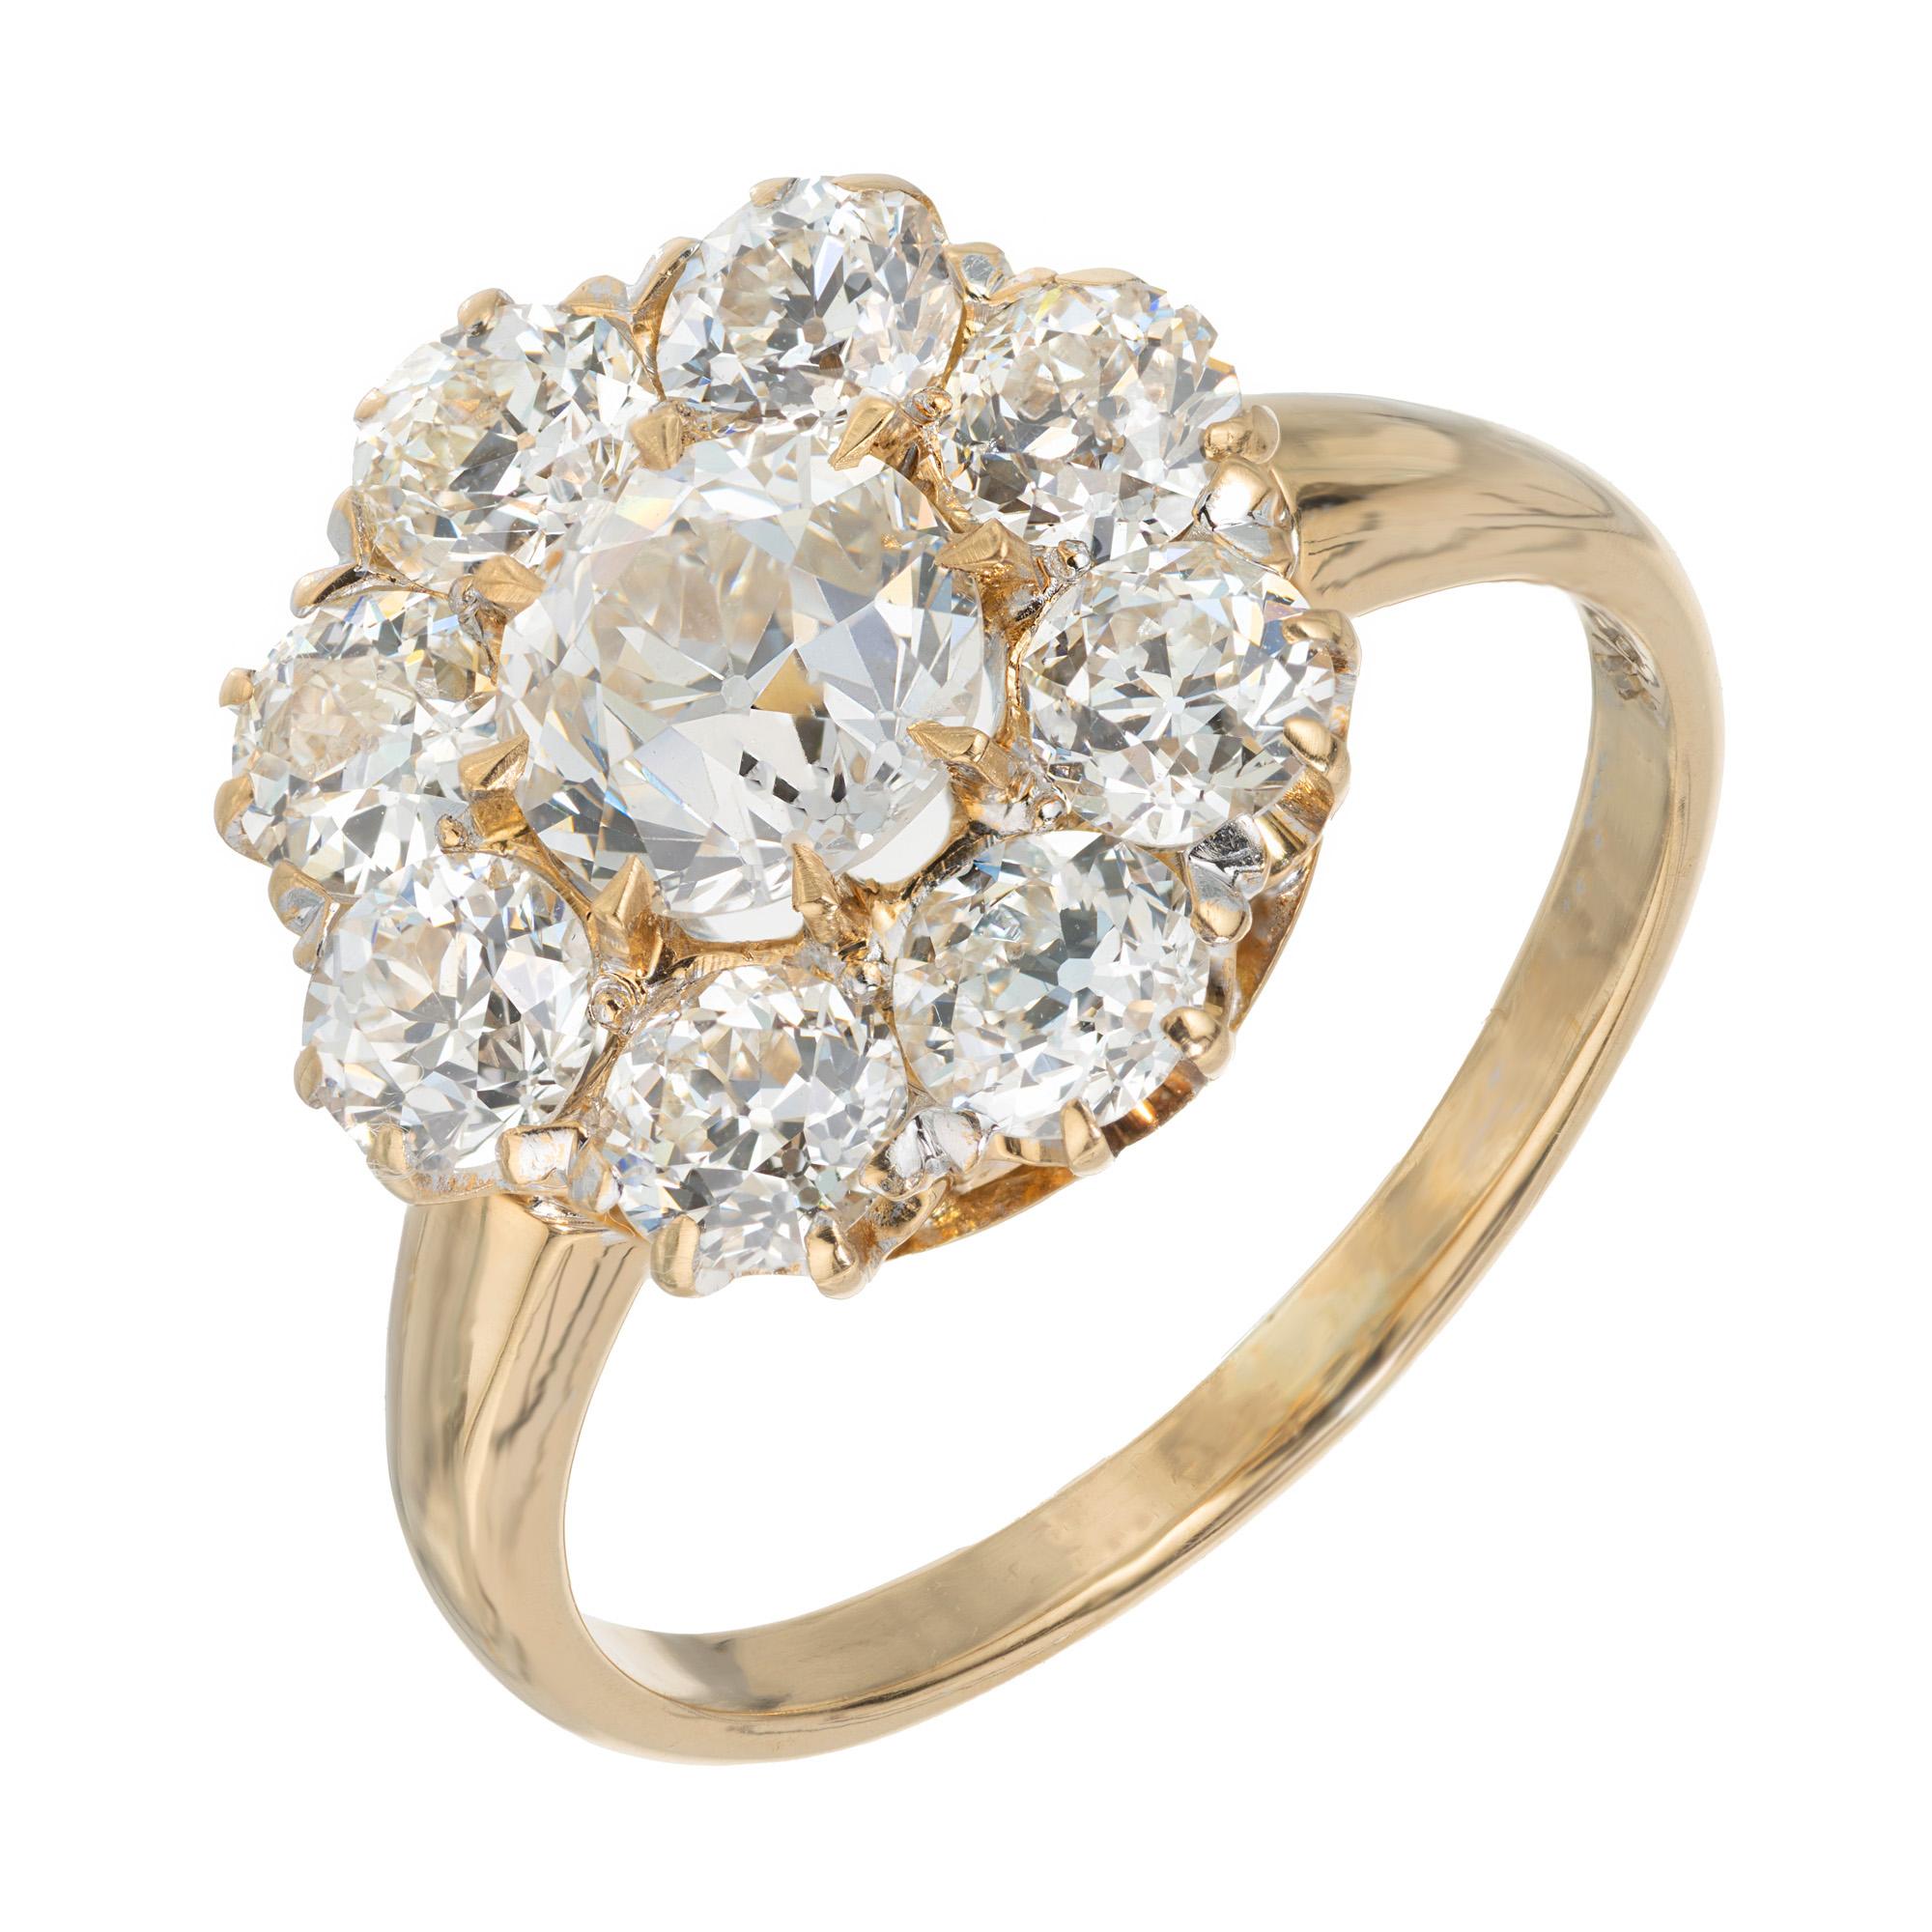 Art Deco Diamant-Verlobungsring. GIA-zertifiziert .87ct Old European Cut Center Stein mit einem Halo von 8 Old European Cut Diamanten in seinem ursprünglichen 18k Gelbgold Cluster Ring Einstellung. Dieser Ring verkörpert die Ära des Art déco.

1